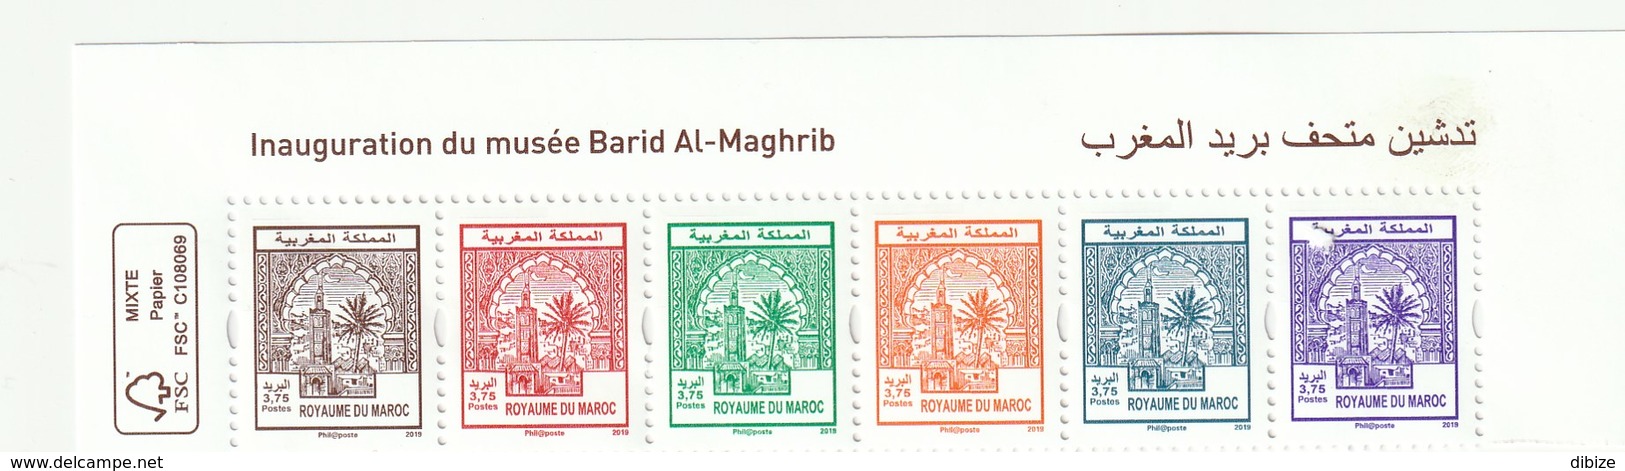 Maroc. Coin  De 6 Timbres 2019. Inauguration Du Musée De Barid Al Maghrib. Reproduction Des Timbres 1-6 De 1912. - Marruecos (1956-...)